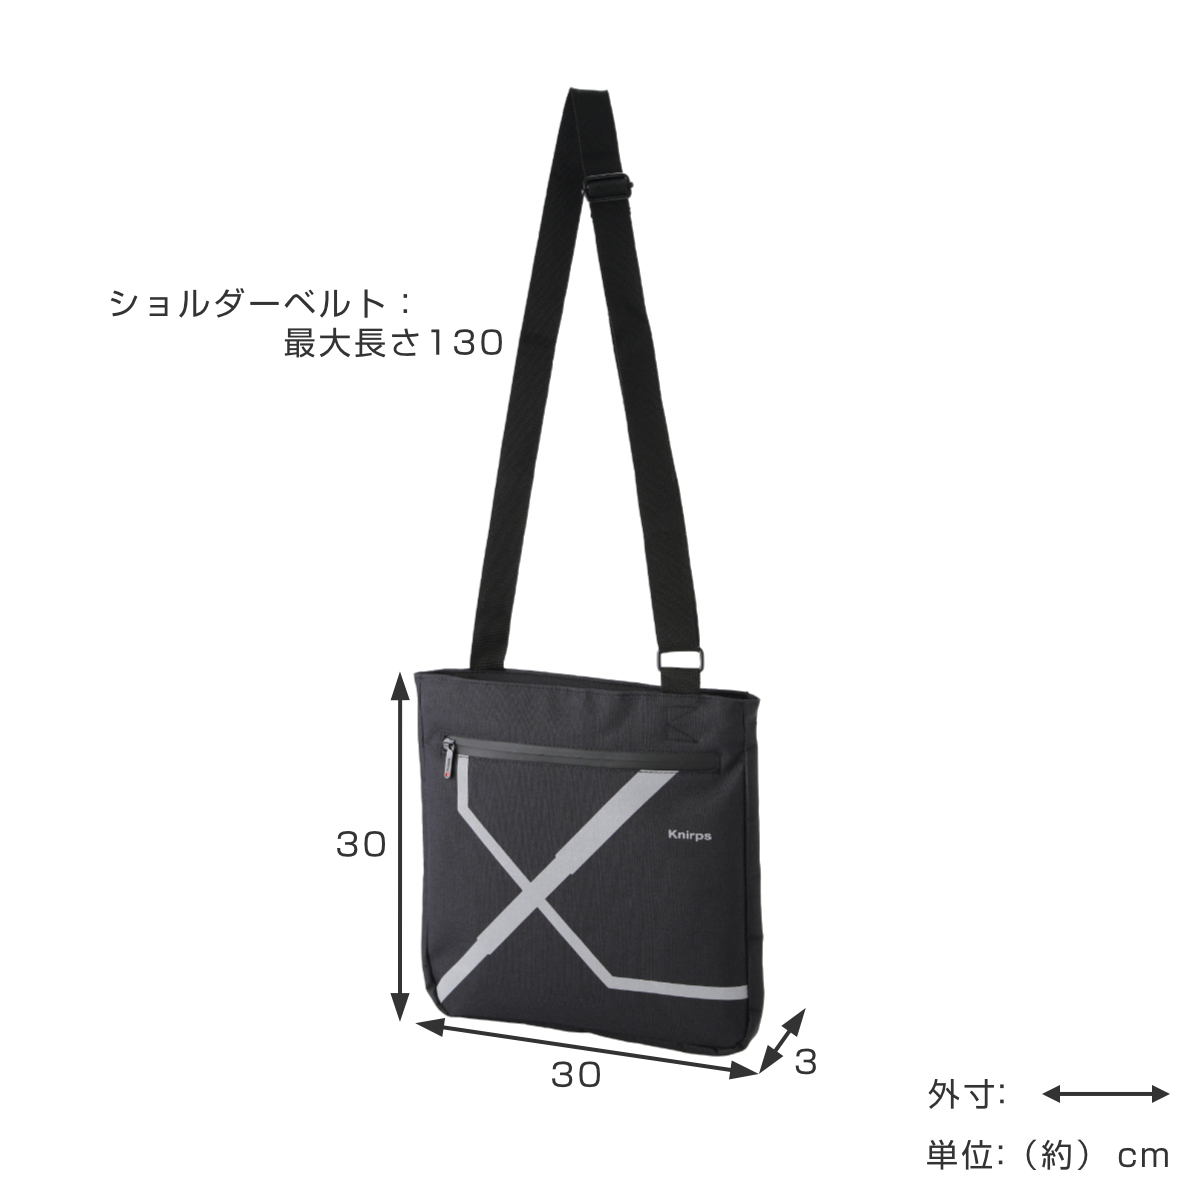 【色: ブラック [黒] 15151】[キタムラ] ファスナーポケット付き 斜めバッグ